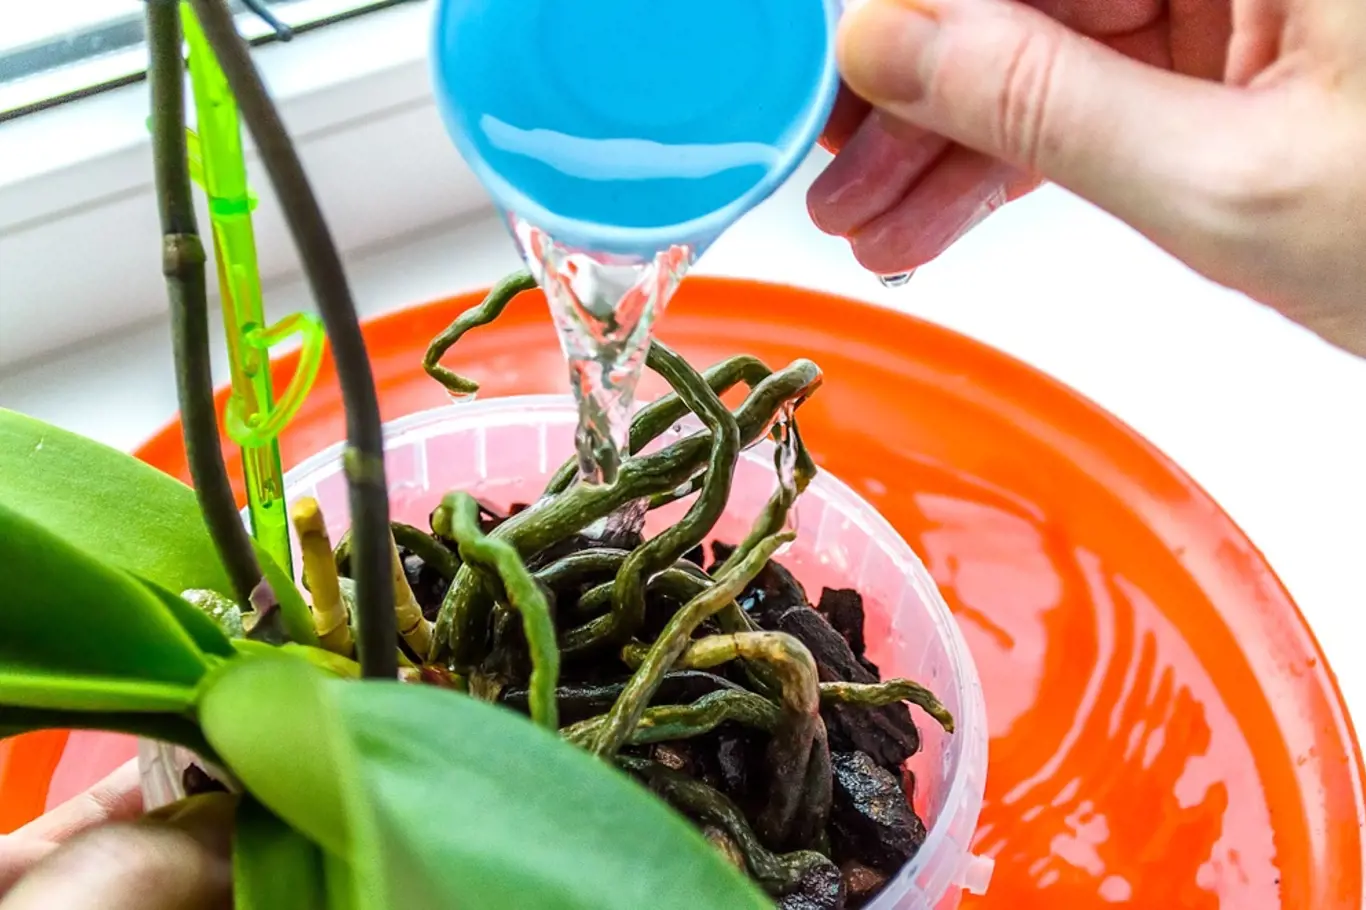 Vyrobte roztok z kvasnic z cukru a namočte do něj kořeny orchidejí